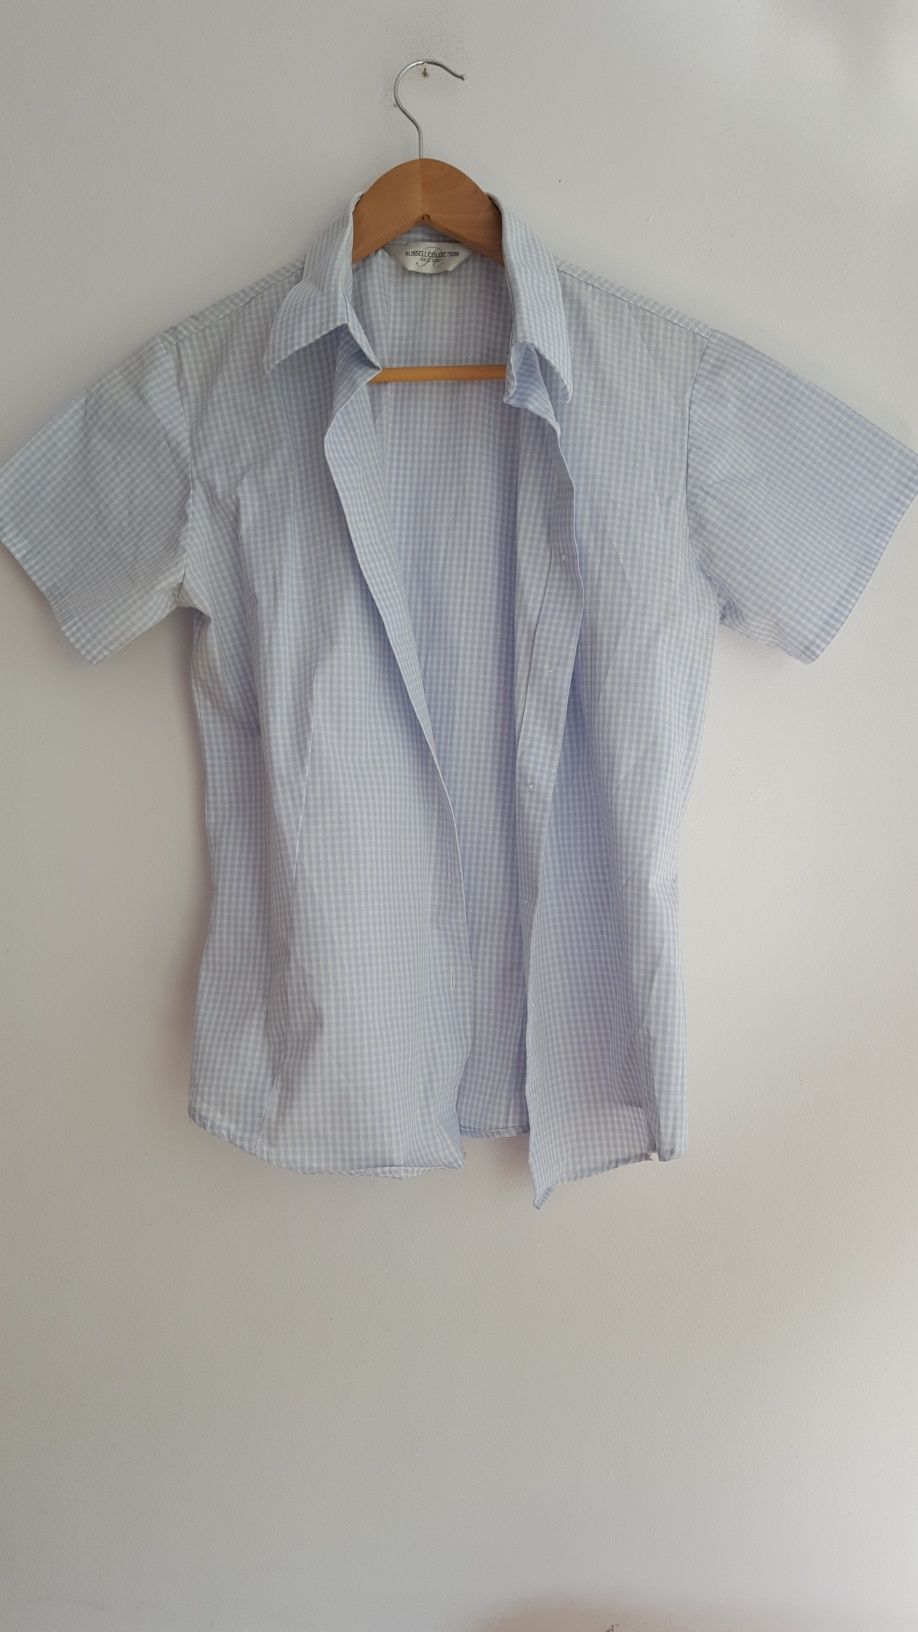 Bluzka koszulowa błękitna w drobną krateczkę, bawełna, M